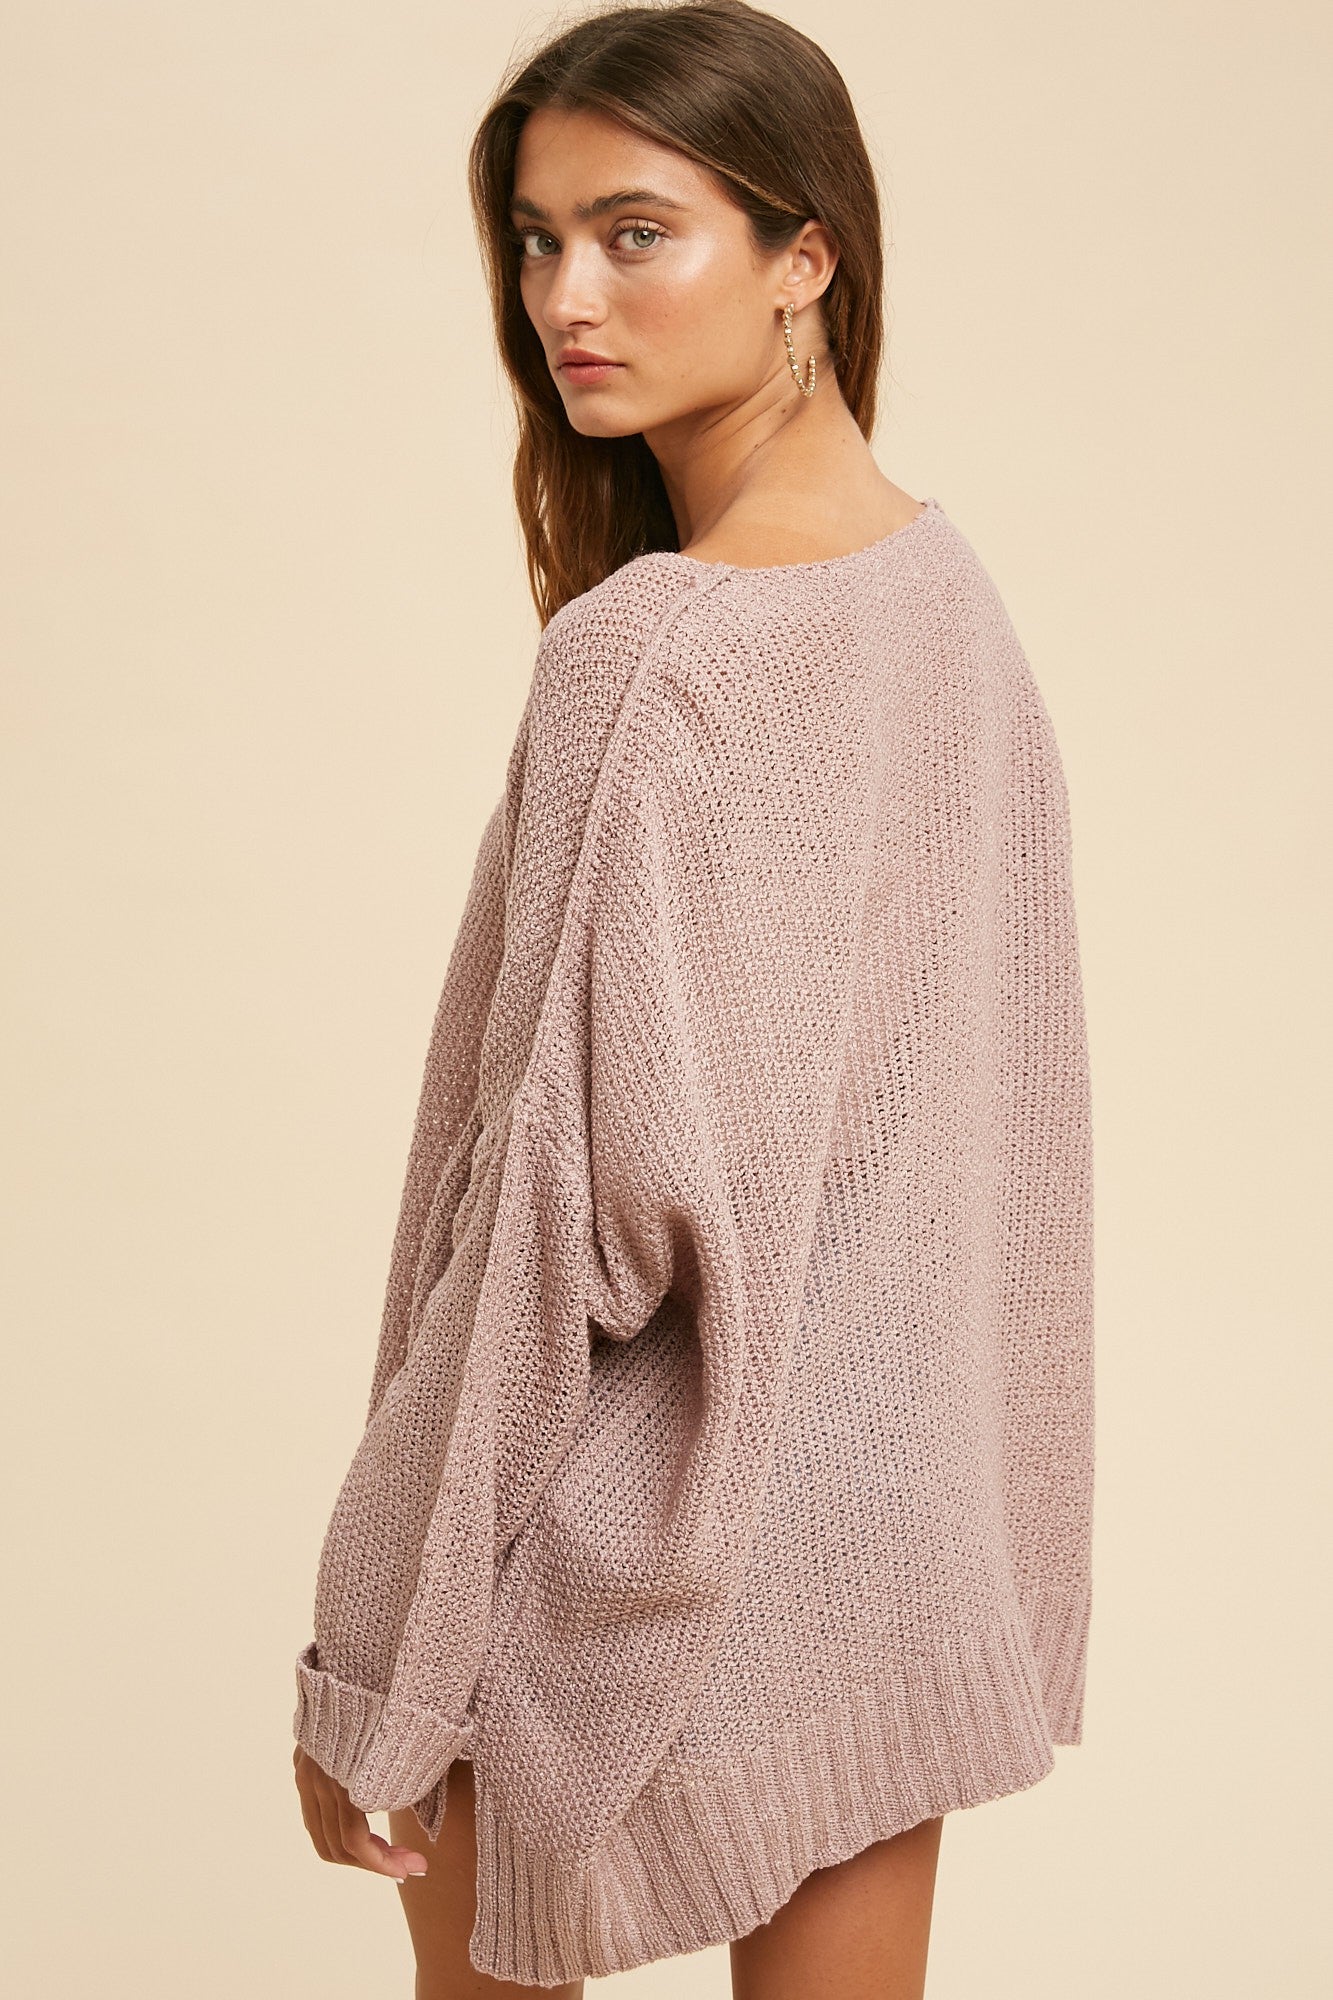 Lightweight Textured Sweater